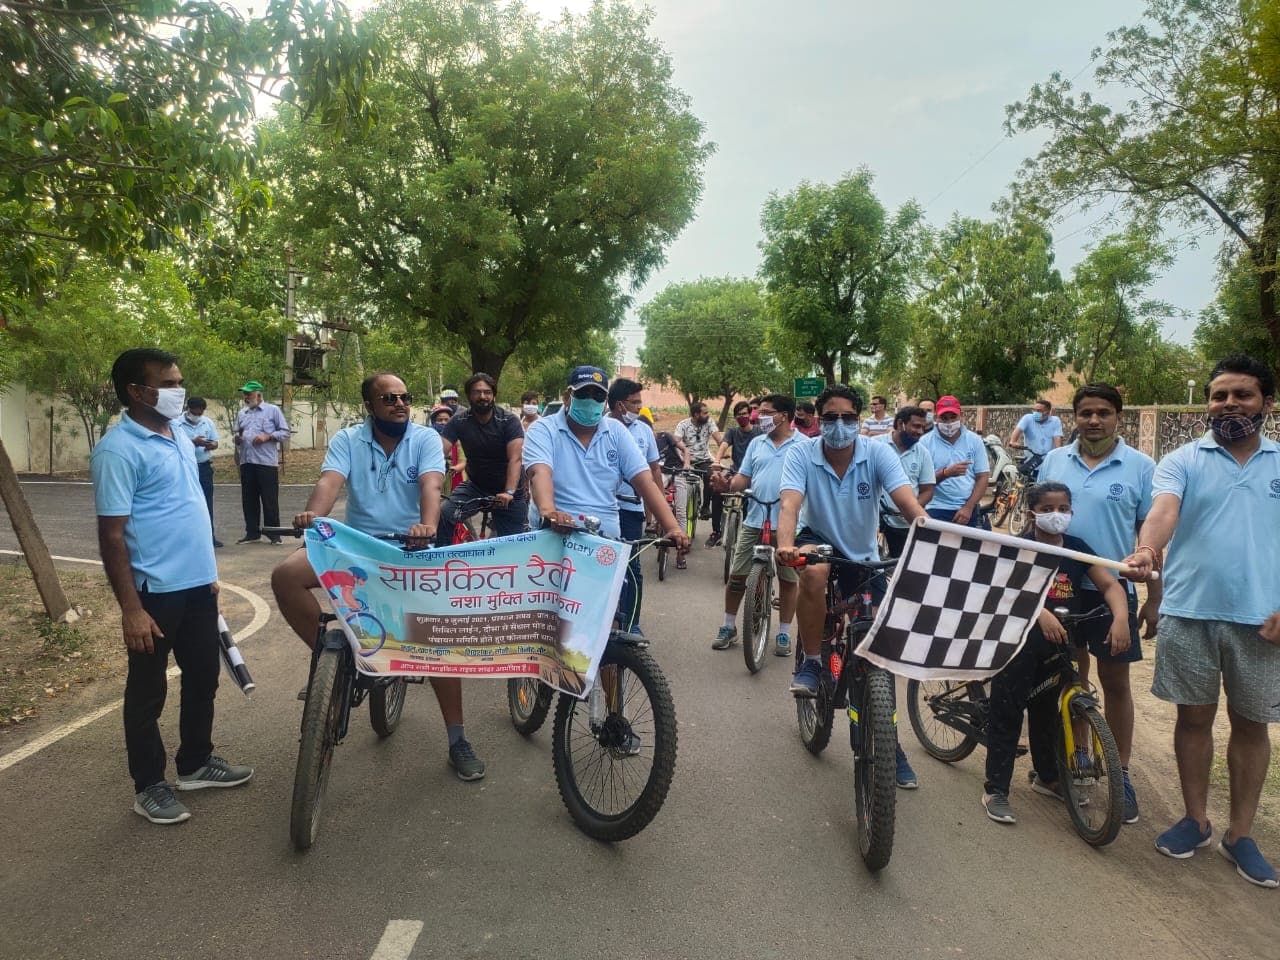 नशा मुक्ति अभियान: साइकिल रैली निकालकर किया जागरूक